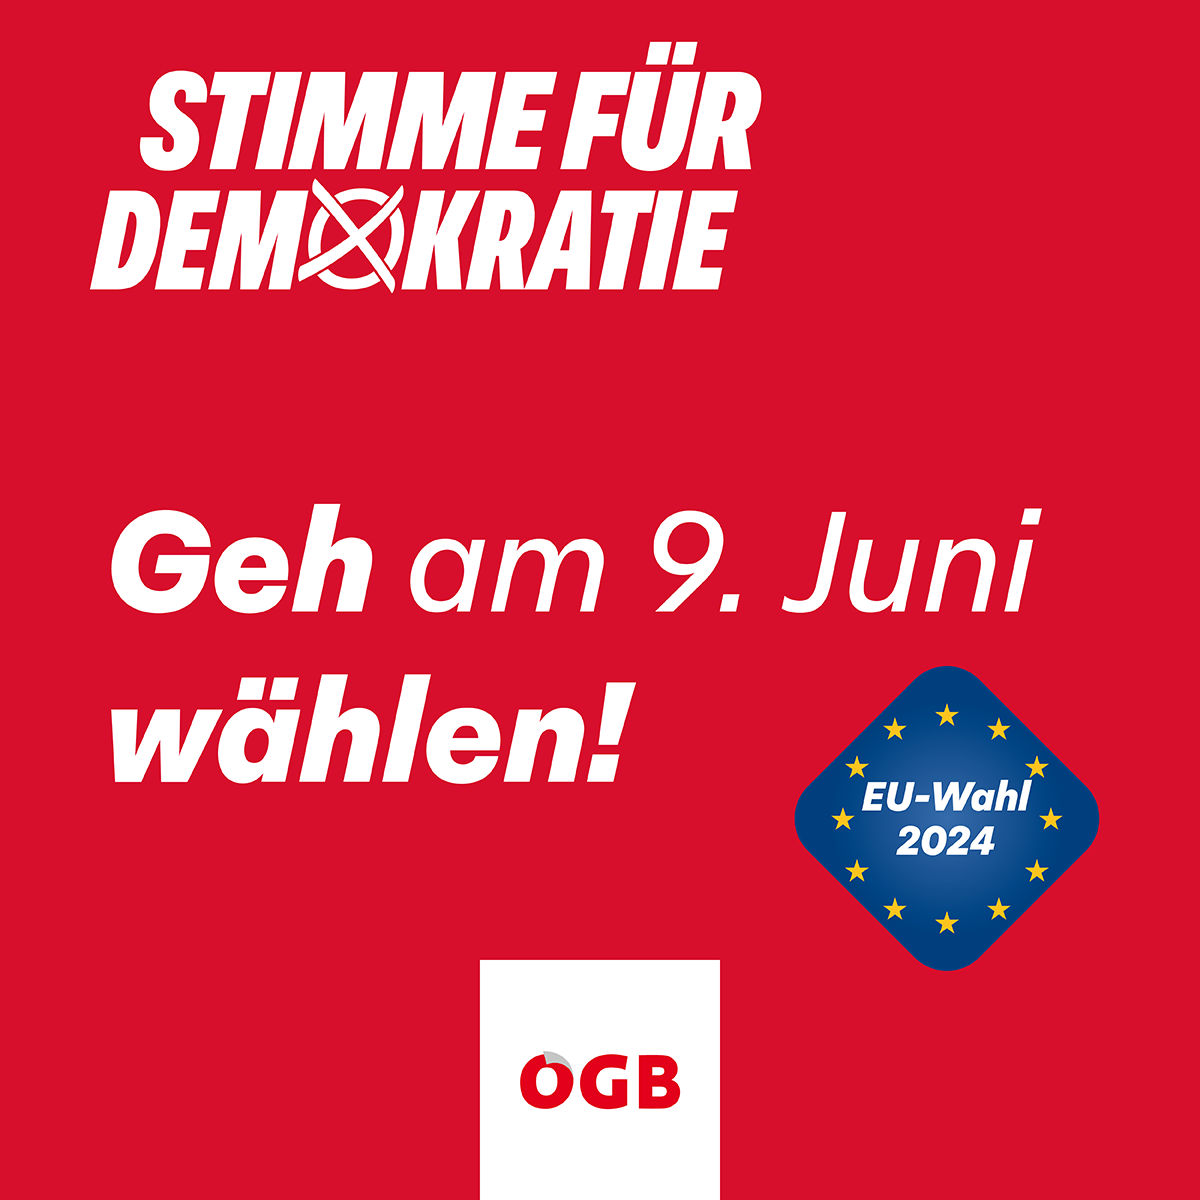 OEGB_EU-Wahl_Stimme fuer Demokratie_SoMe_1zu1